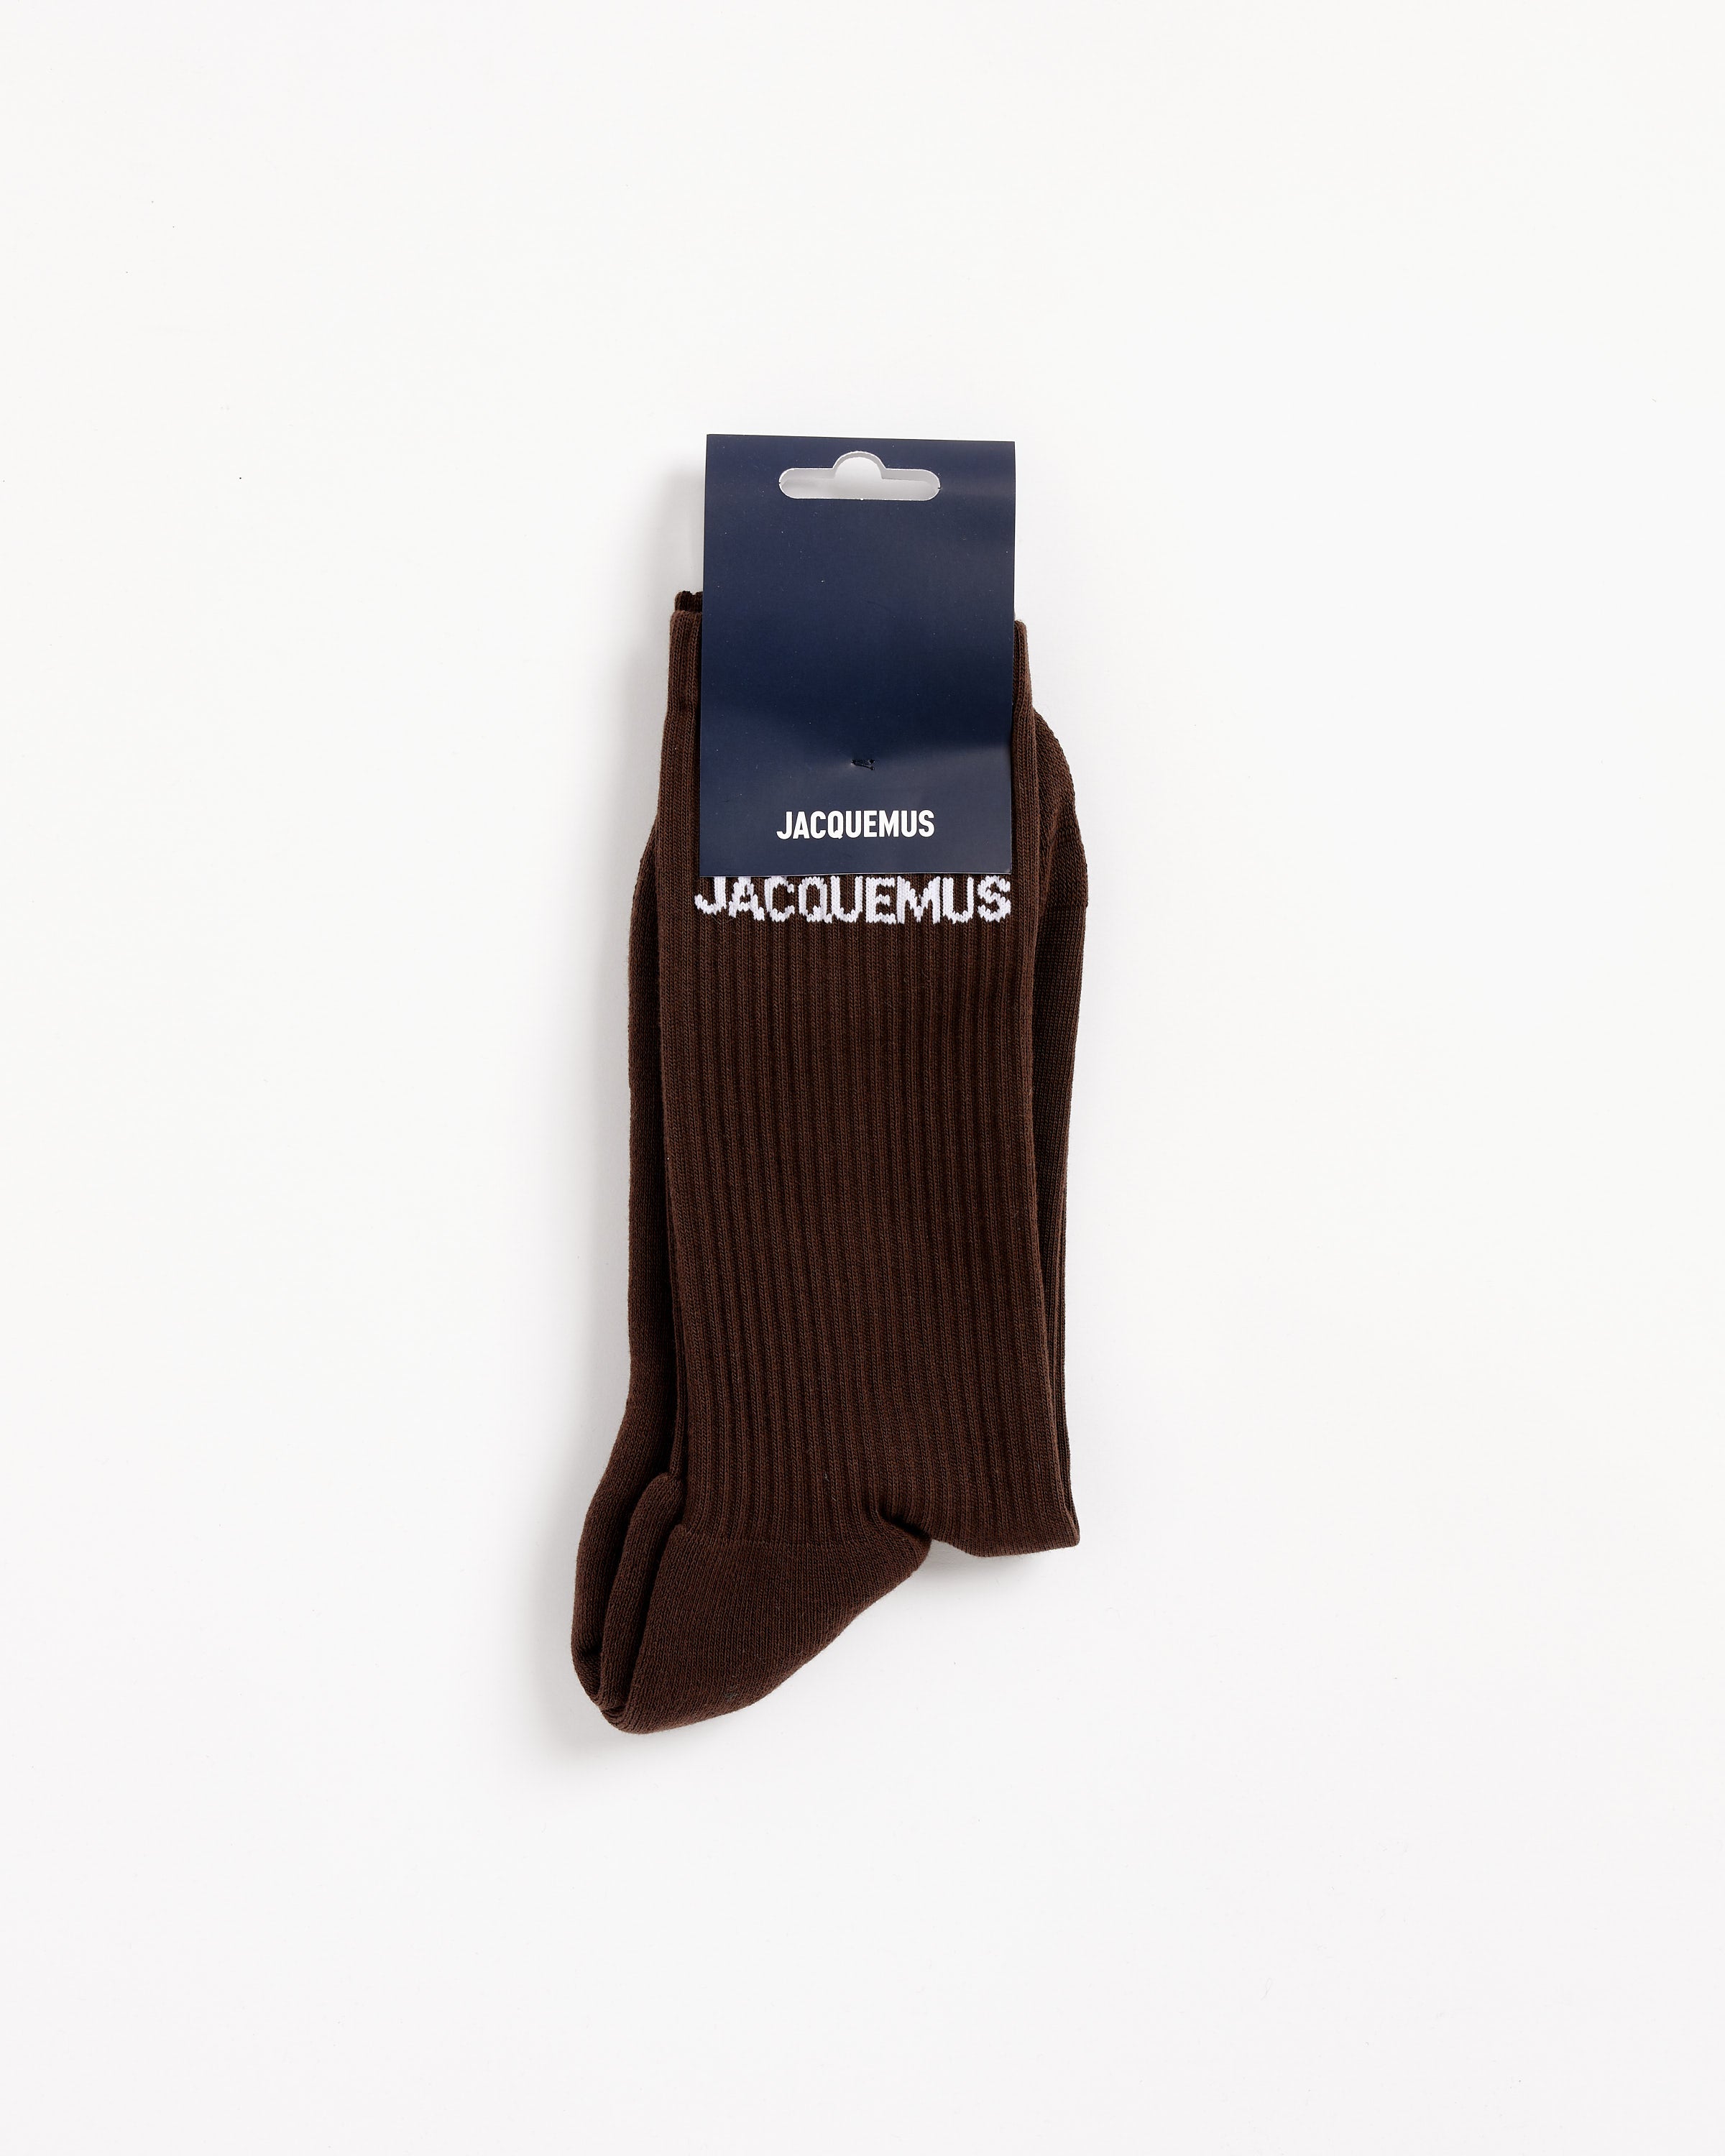 Jacquemus Les Chaussettes J Socks